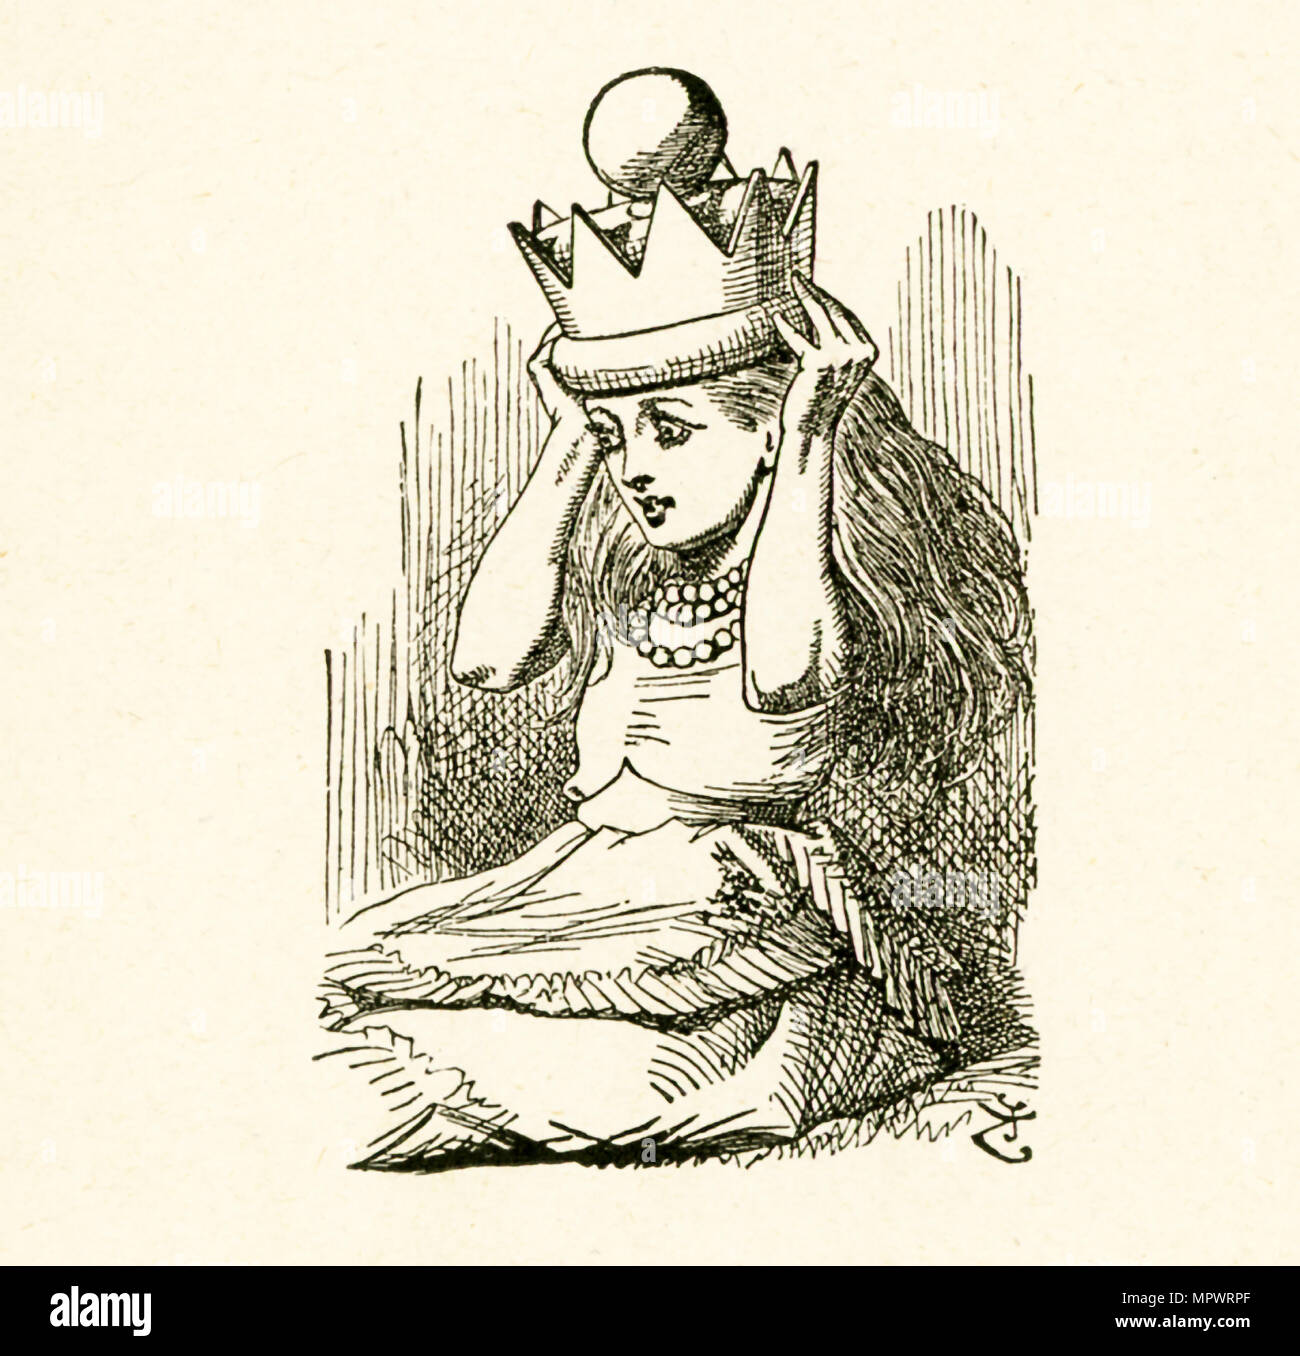 Questa illustrazione di Alice mettendo sul royal crown è da 'attraverso il Looking-Glass e quello che Alice vi trovarono' da Lewis Carroll (Charles Lutwidge Dodgson), che ha scritto questo romanzo nel 1871 come un sequel di "Alice nel paese delle meraviglie". Foto Stock